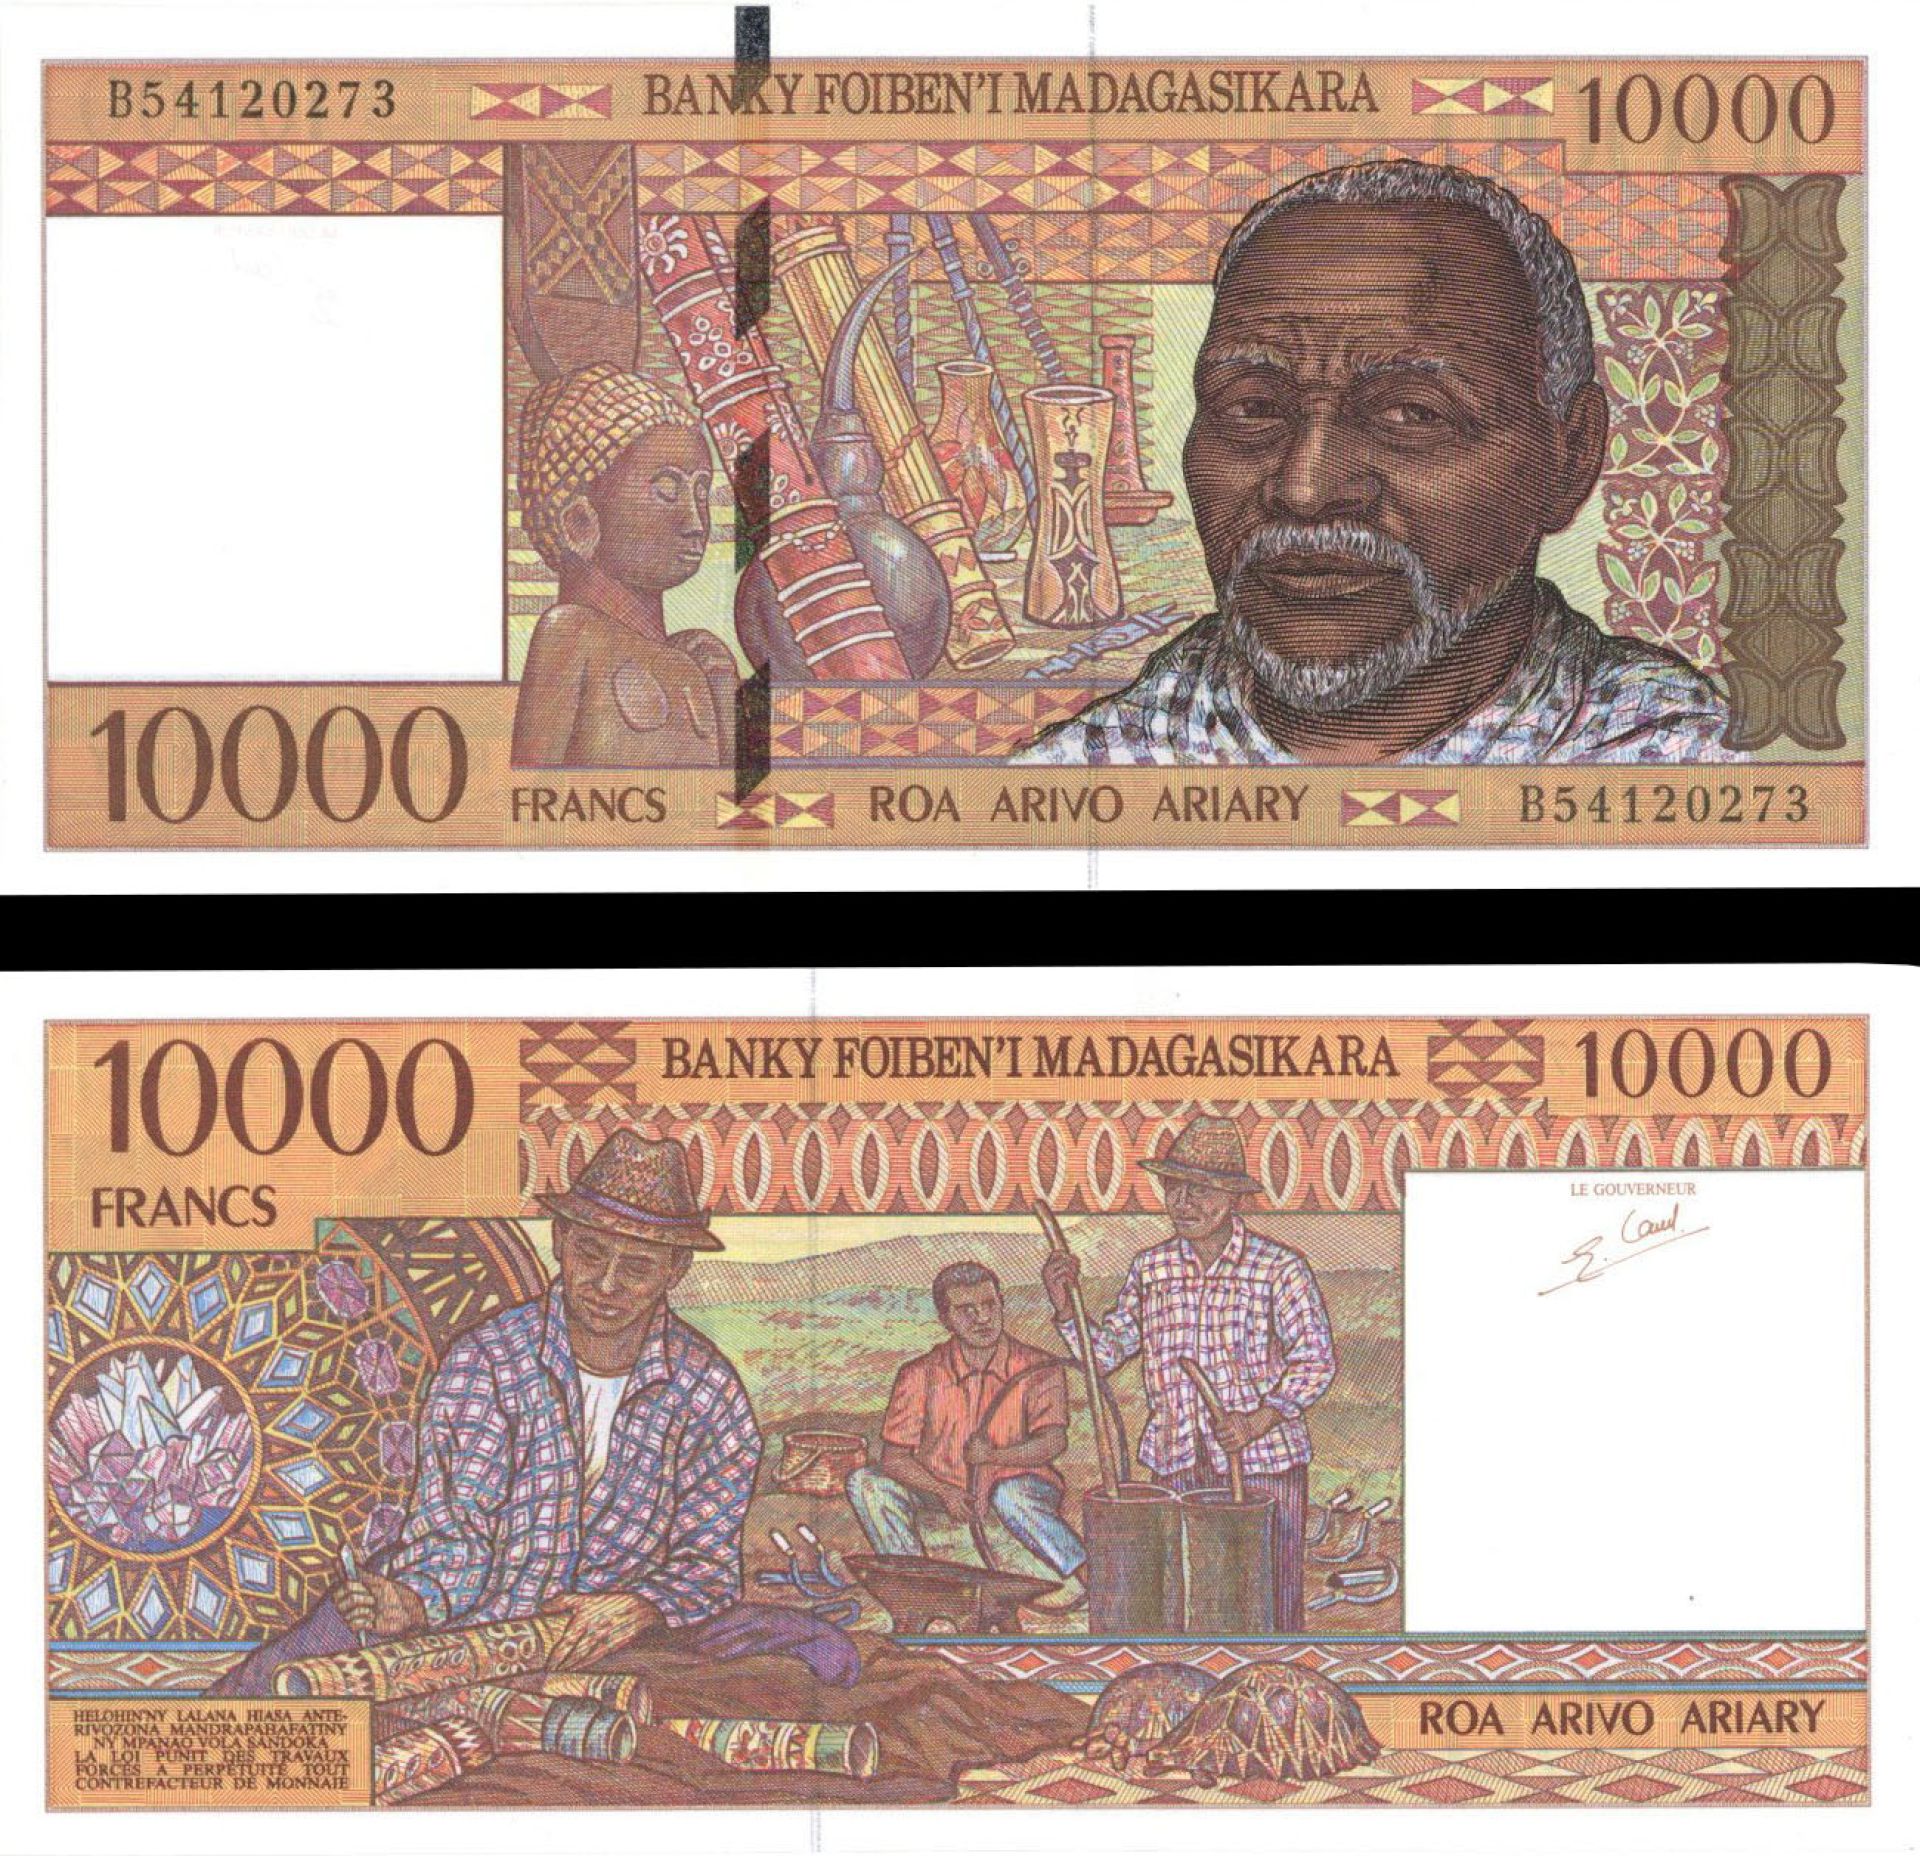 Madagascar - P-79 - Foreign Paper Money